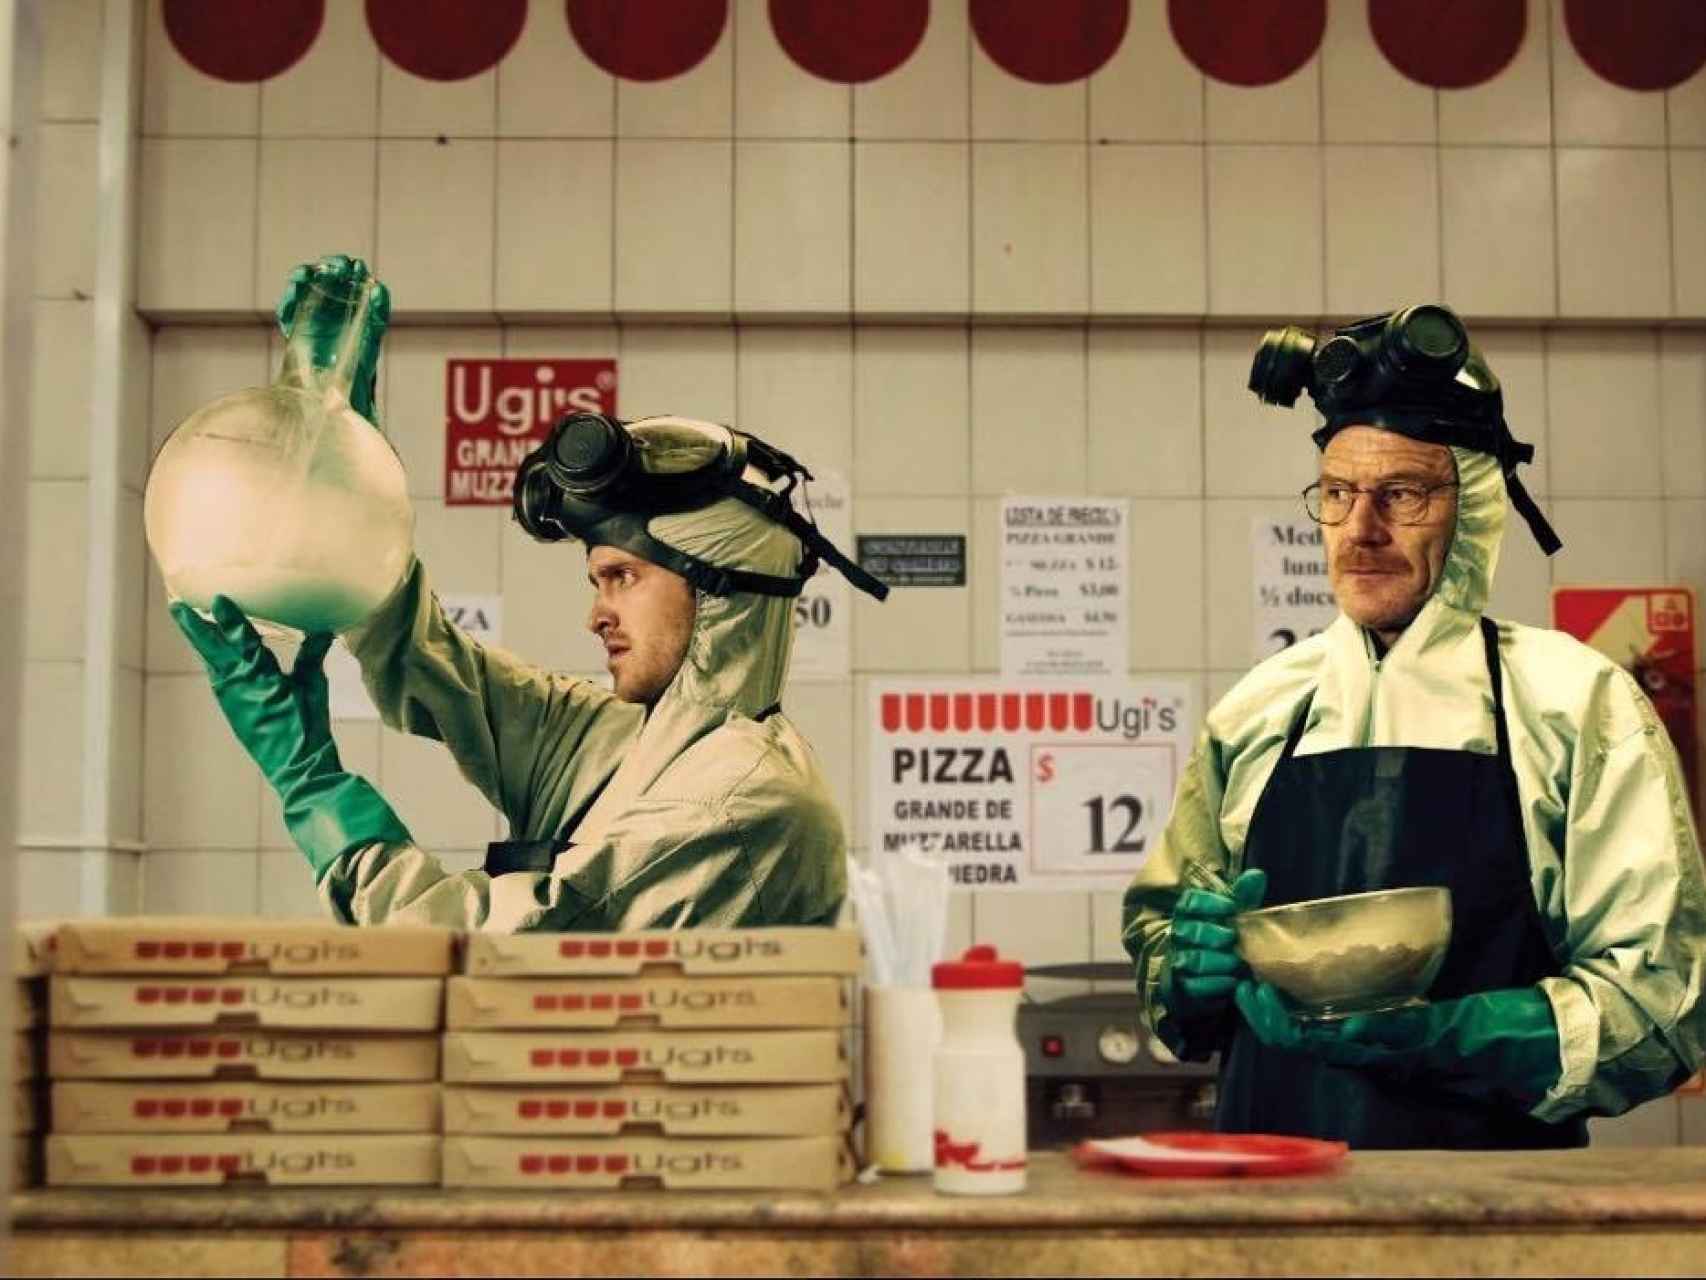 Los protagonistas de la serie Breaking Bad, cocinando droga en una pizzería Ugi's.